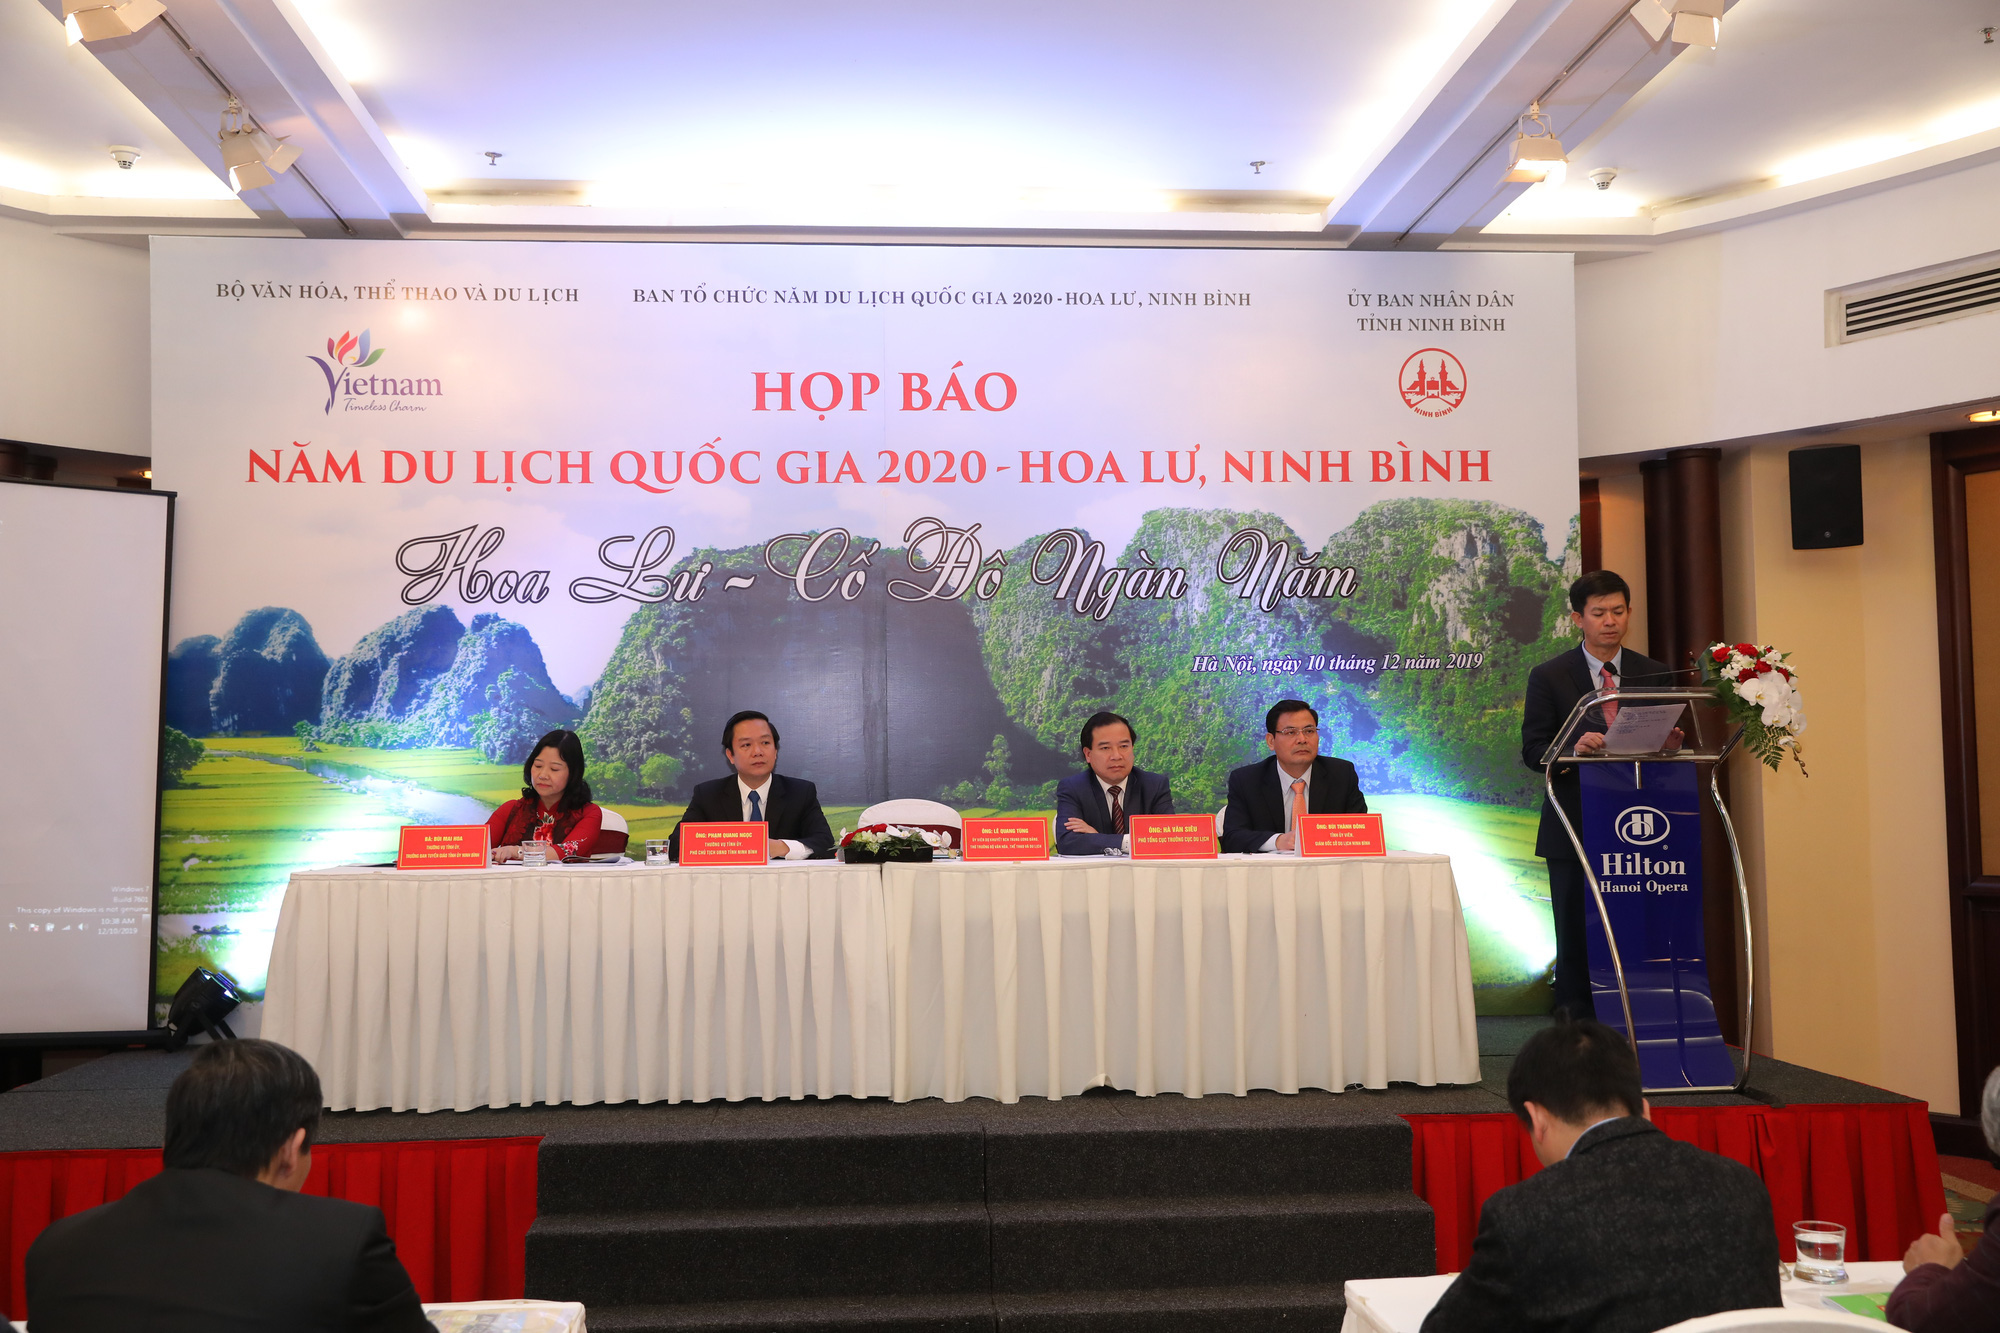 Ninh Bình đăng cai Năm Du lịch Quốc gia 2020 với chủ đề “Hoa Lư – Cố đô ngàn năm” - Ảnh 1.